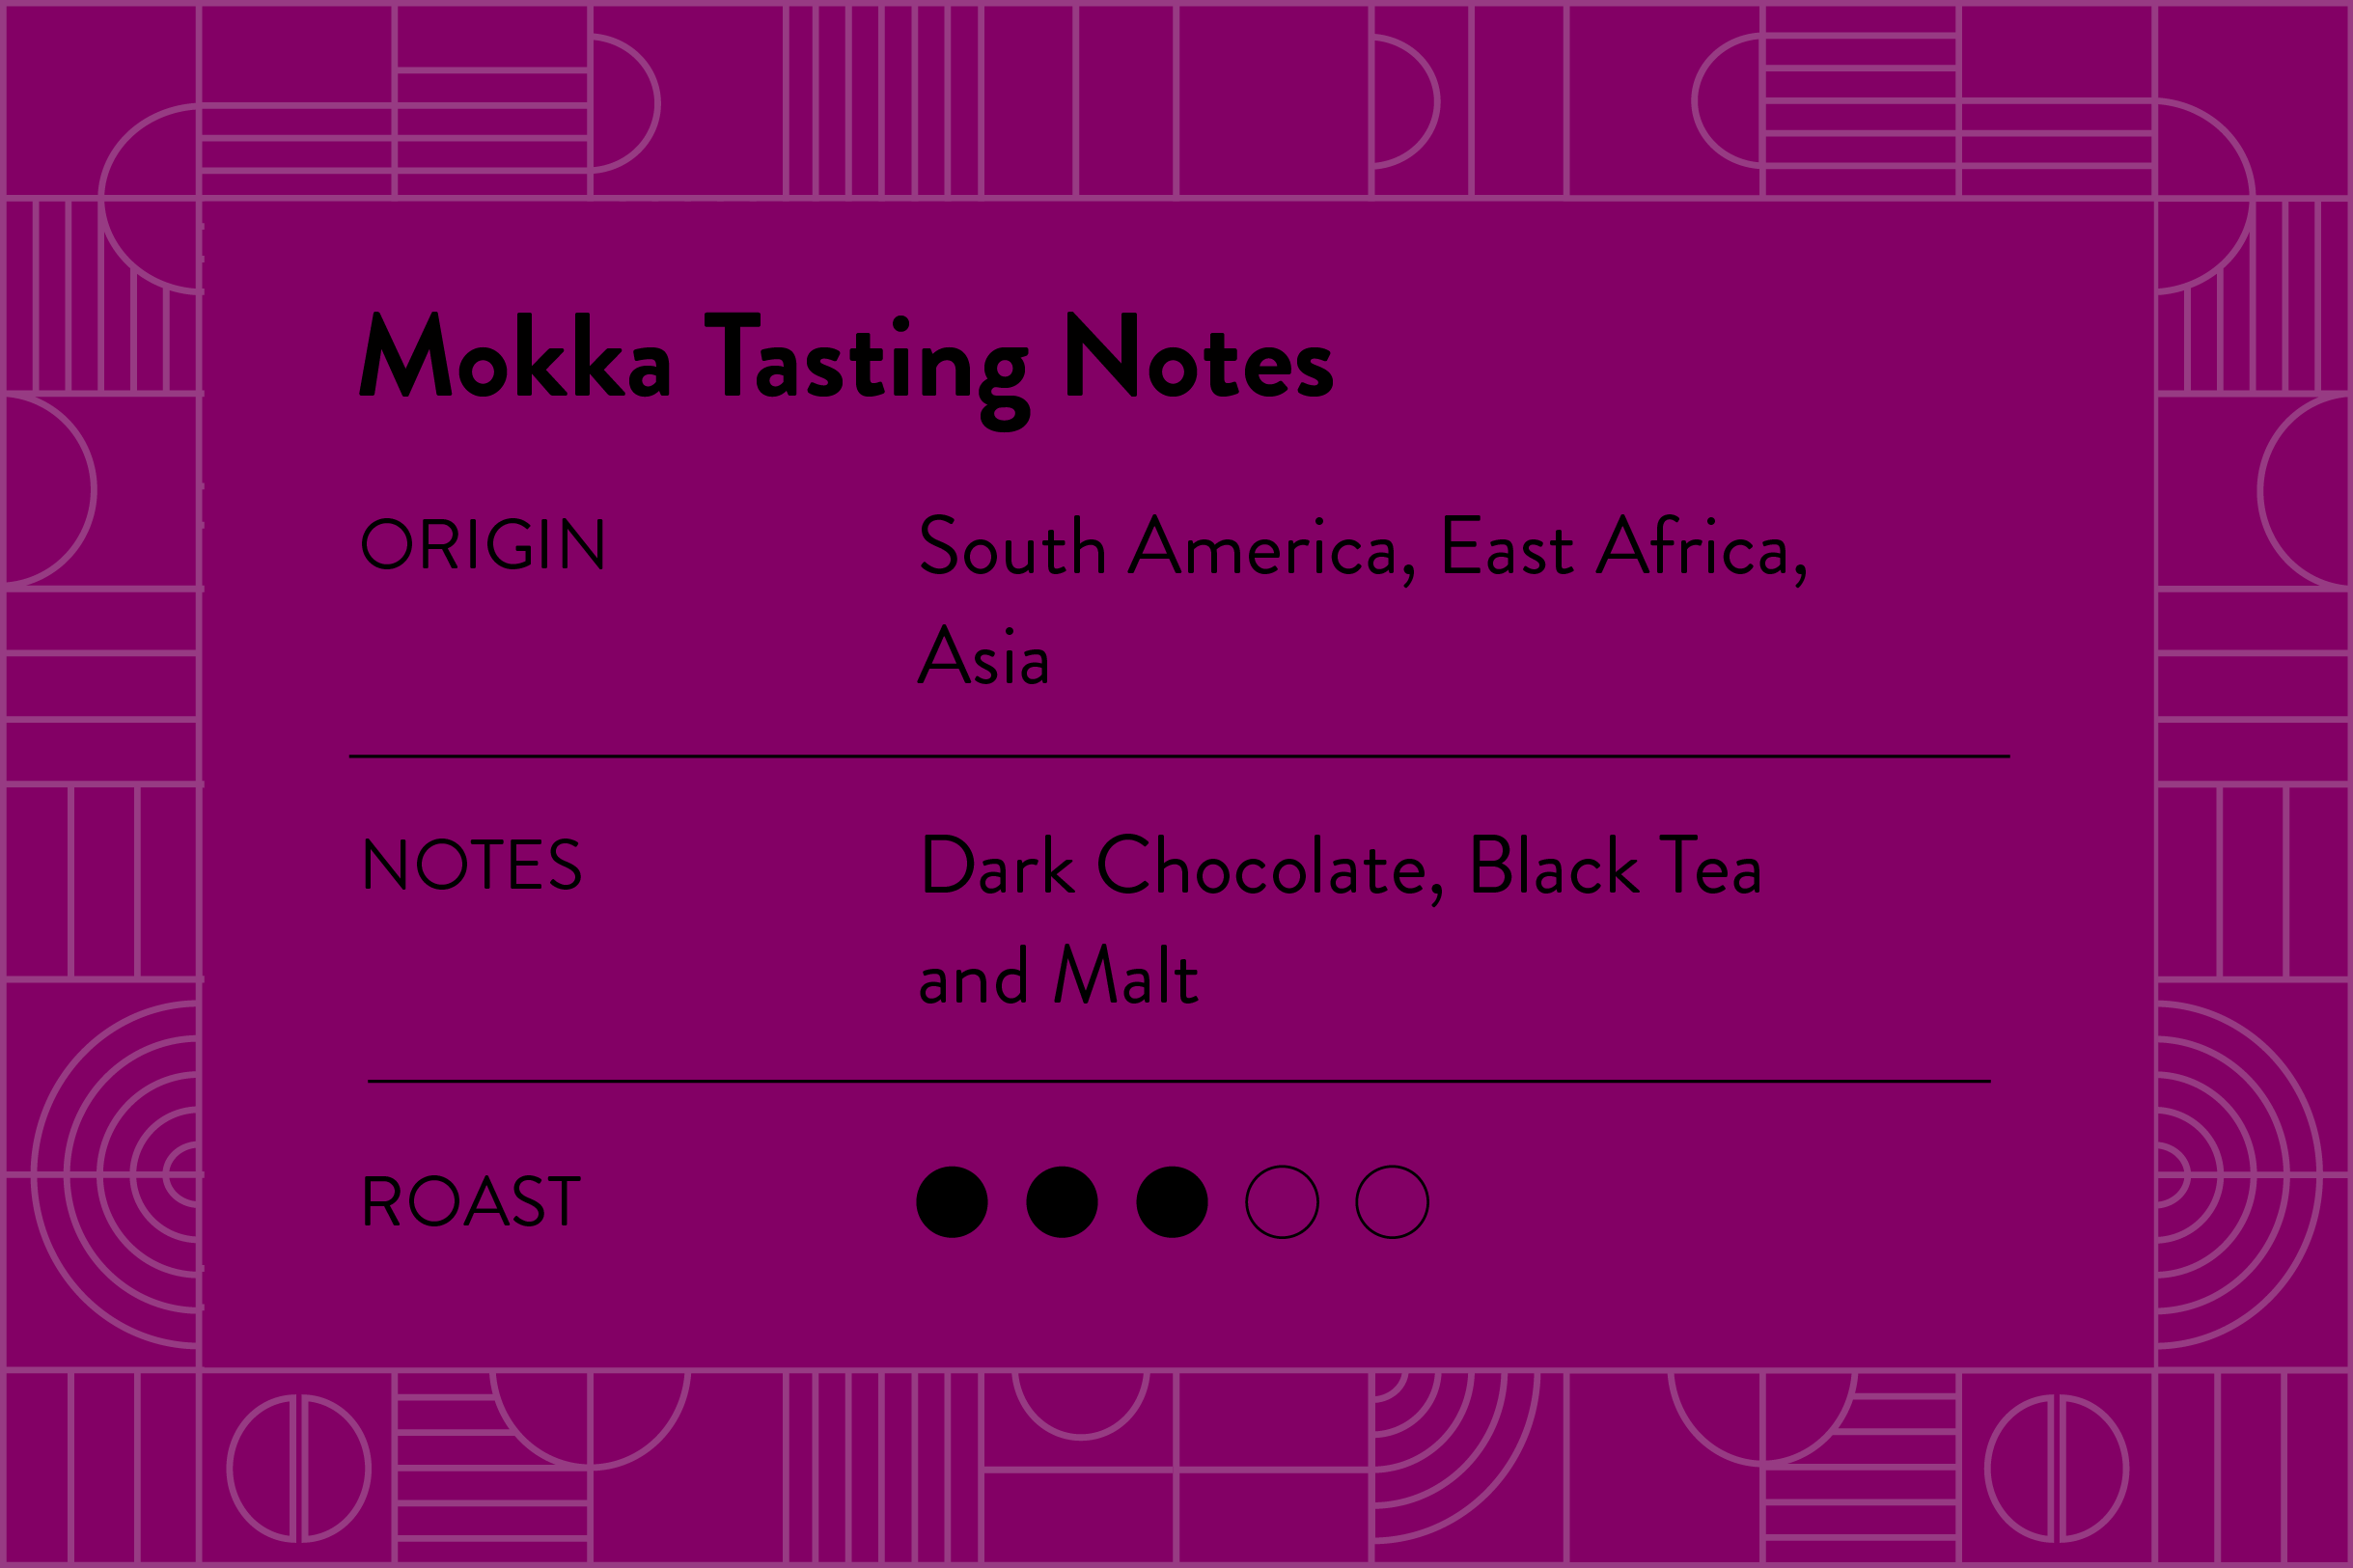 Mokka tasting notes, Dark Chocolate, Black tea and Malt